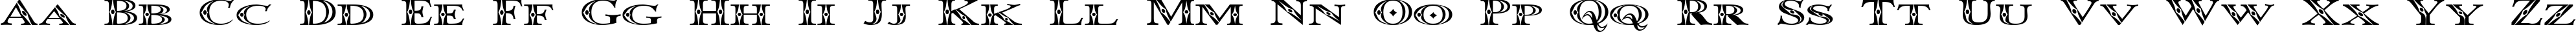 Пример написания английского алфавита шрифтом Occoluchi Minicaps